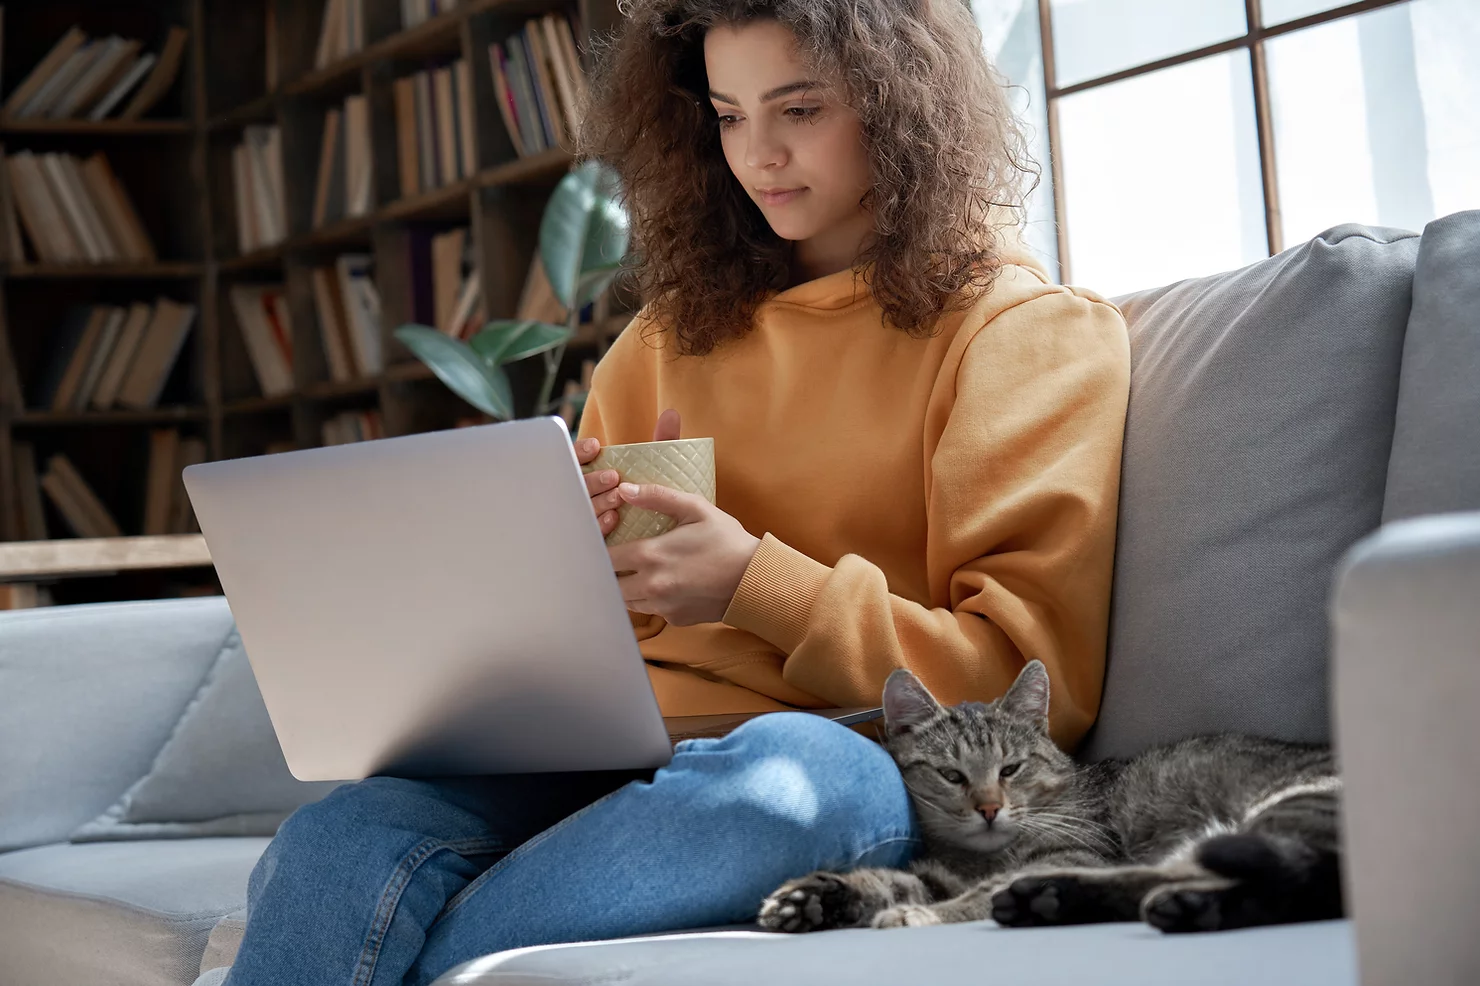 Assistante en ligne qui est en train de travailler de chez elle , elle a son ordinateur portable sur les genoux et un mug à la main, elle se trouve sur un canapé près d'une bibliothèque